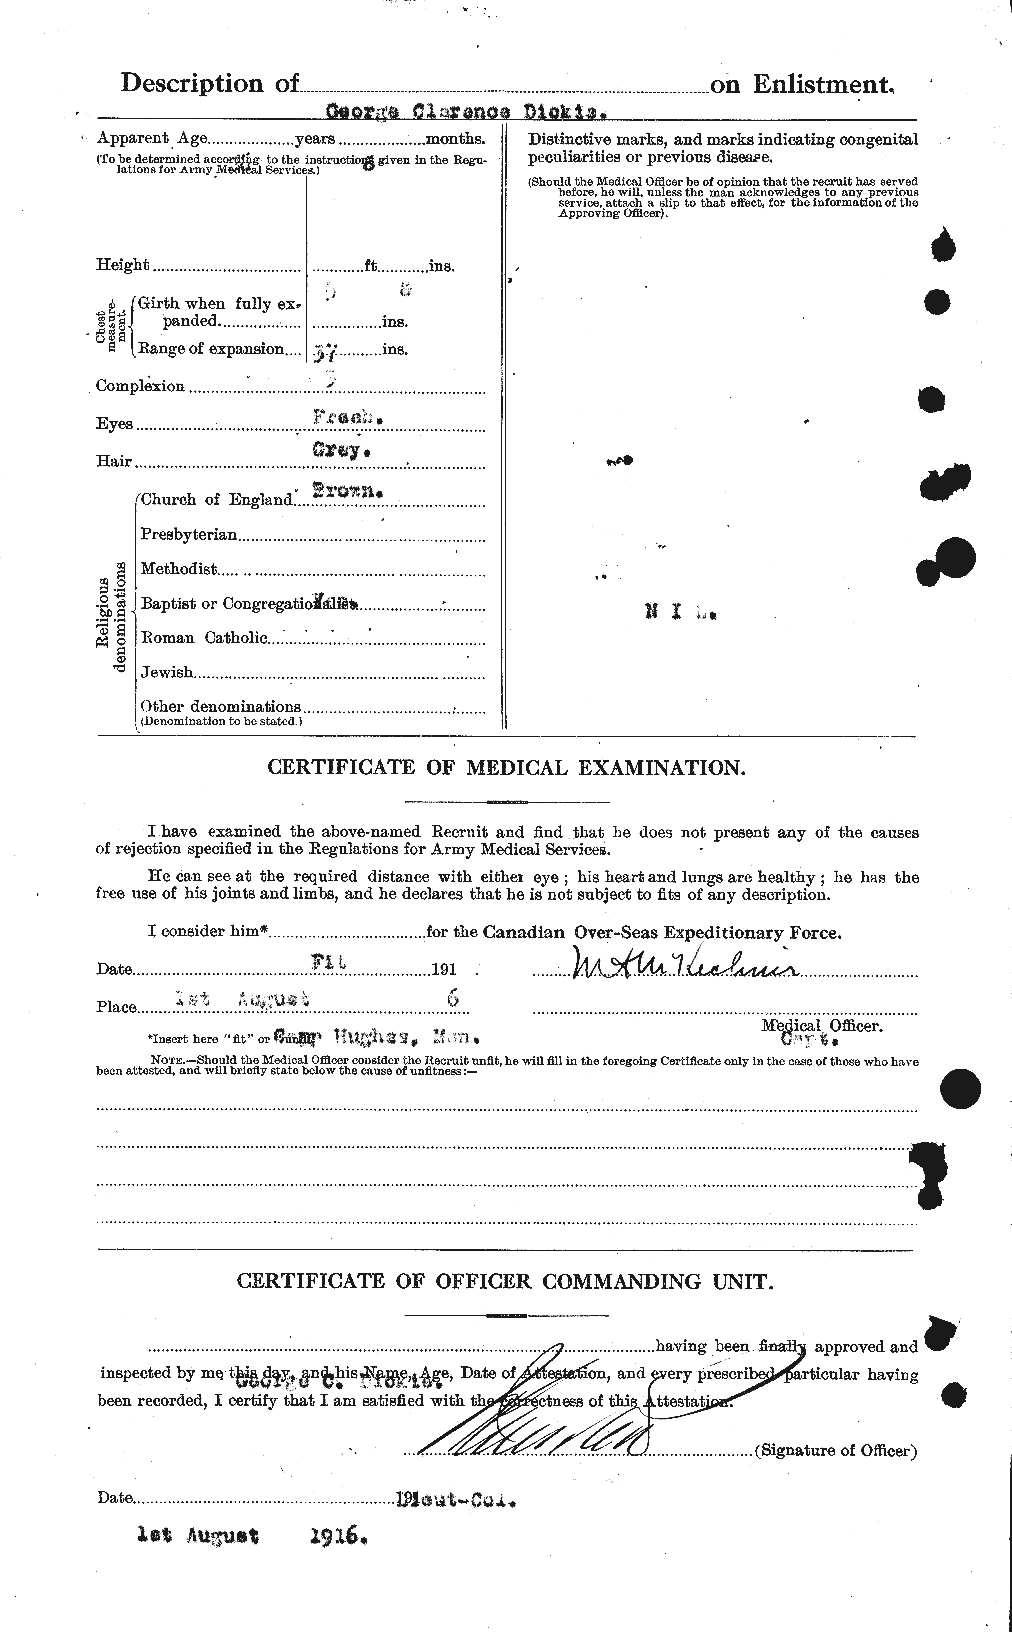 Dossiers du Personnel de la Première Guerre mondiale - CEC 290757b